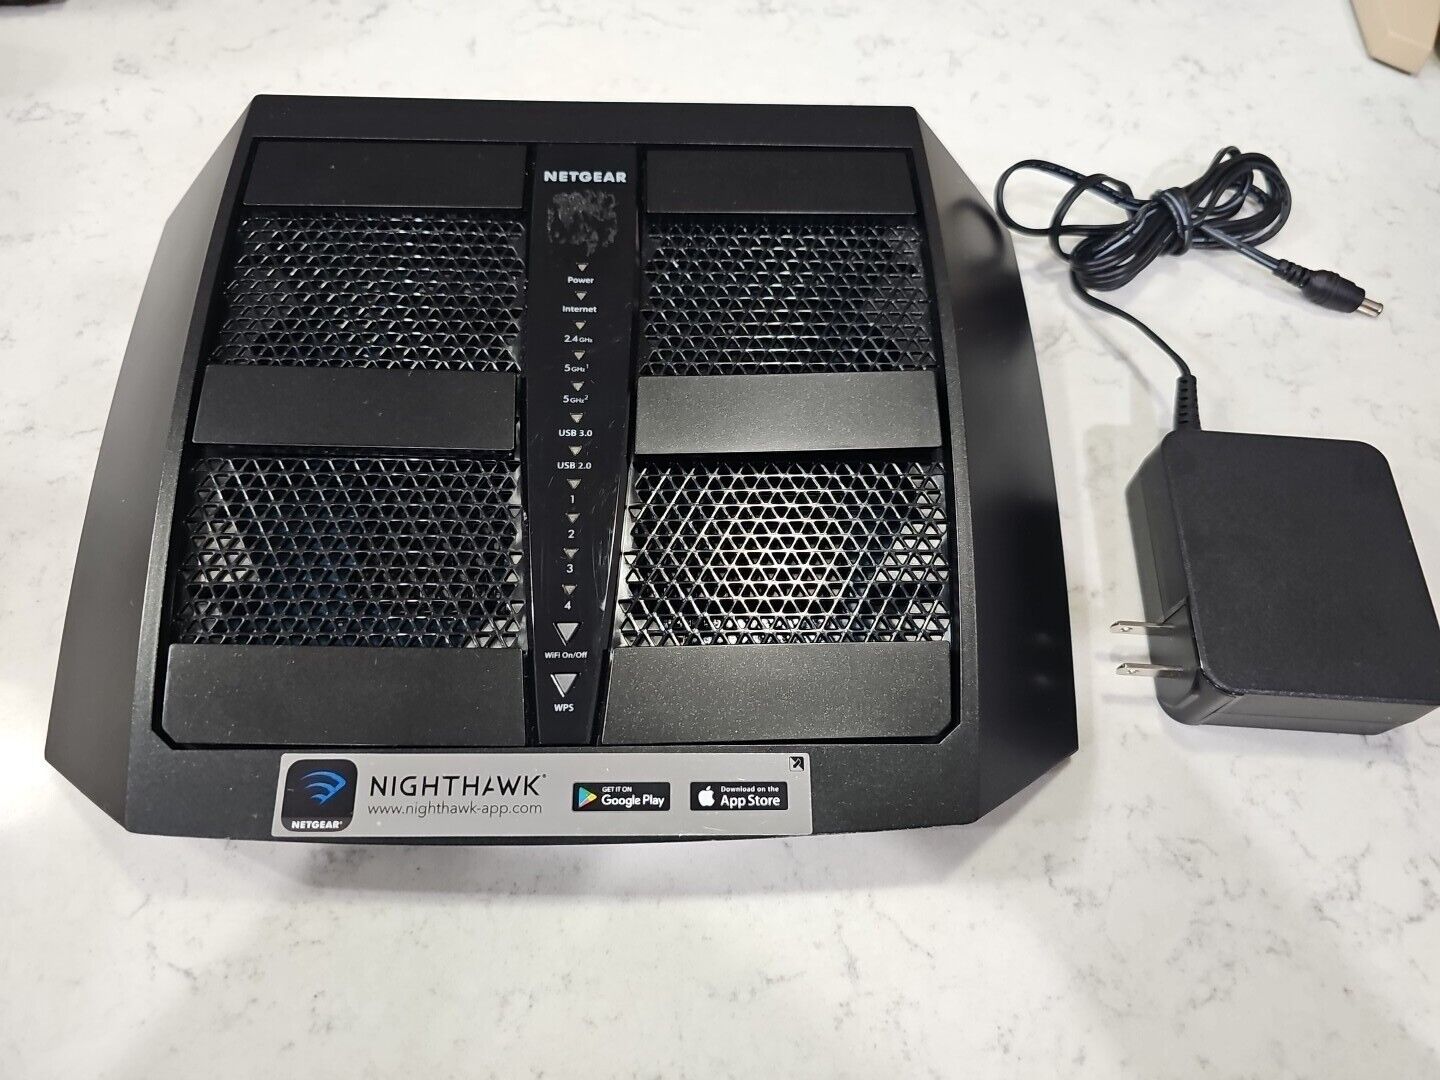 Netgear R8000 Nighthawk X6S AC3200 Tri-Band WiFi Router - Black 